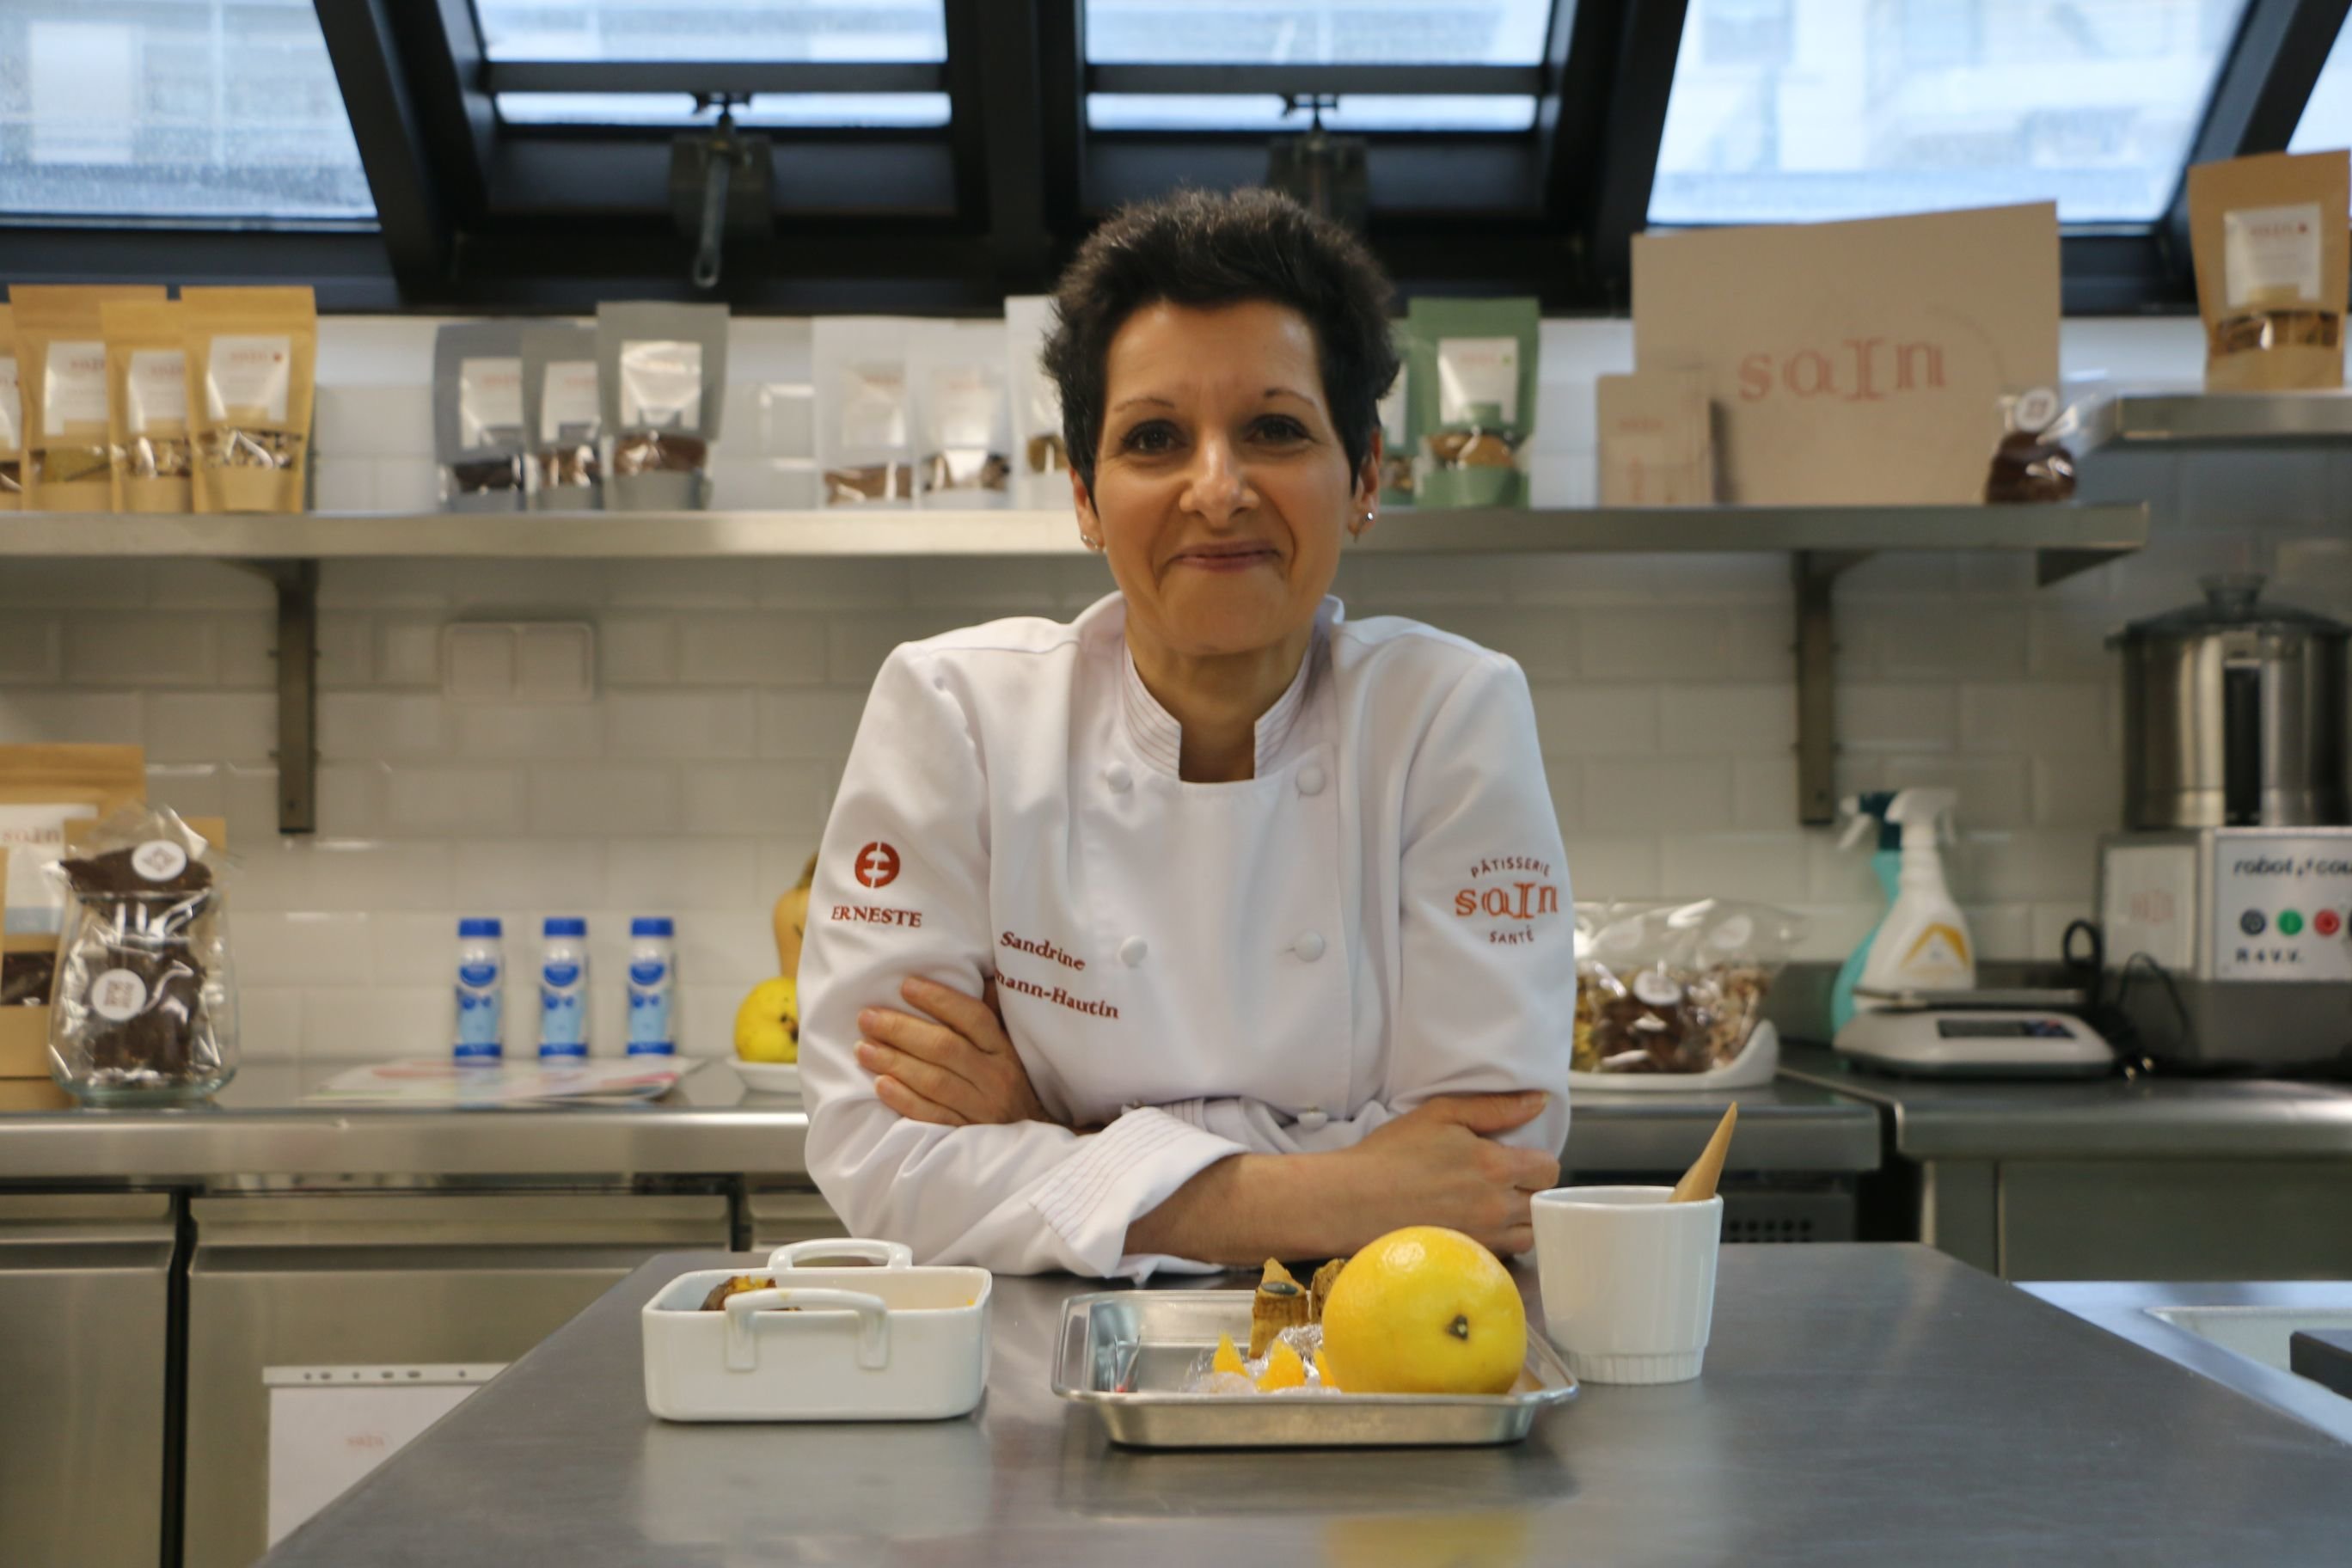 La cheffe-pâtissière Sandrine Baumann-Hautin réalise ses recettes depuis un laboratoire situé dans un centre de cancérologie, à Levallois-Perret. LP/Juliette Duclos